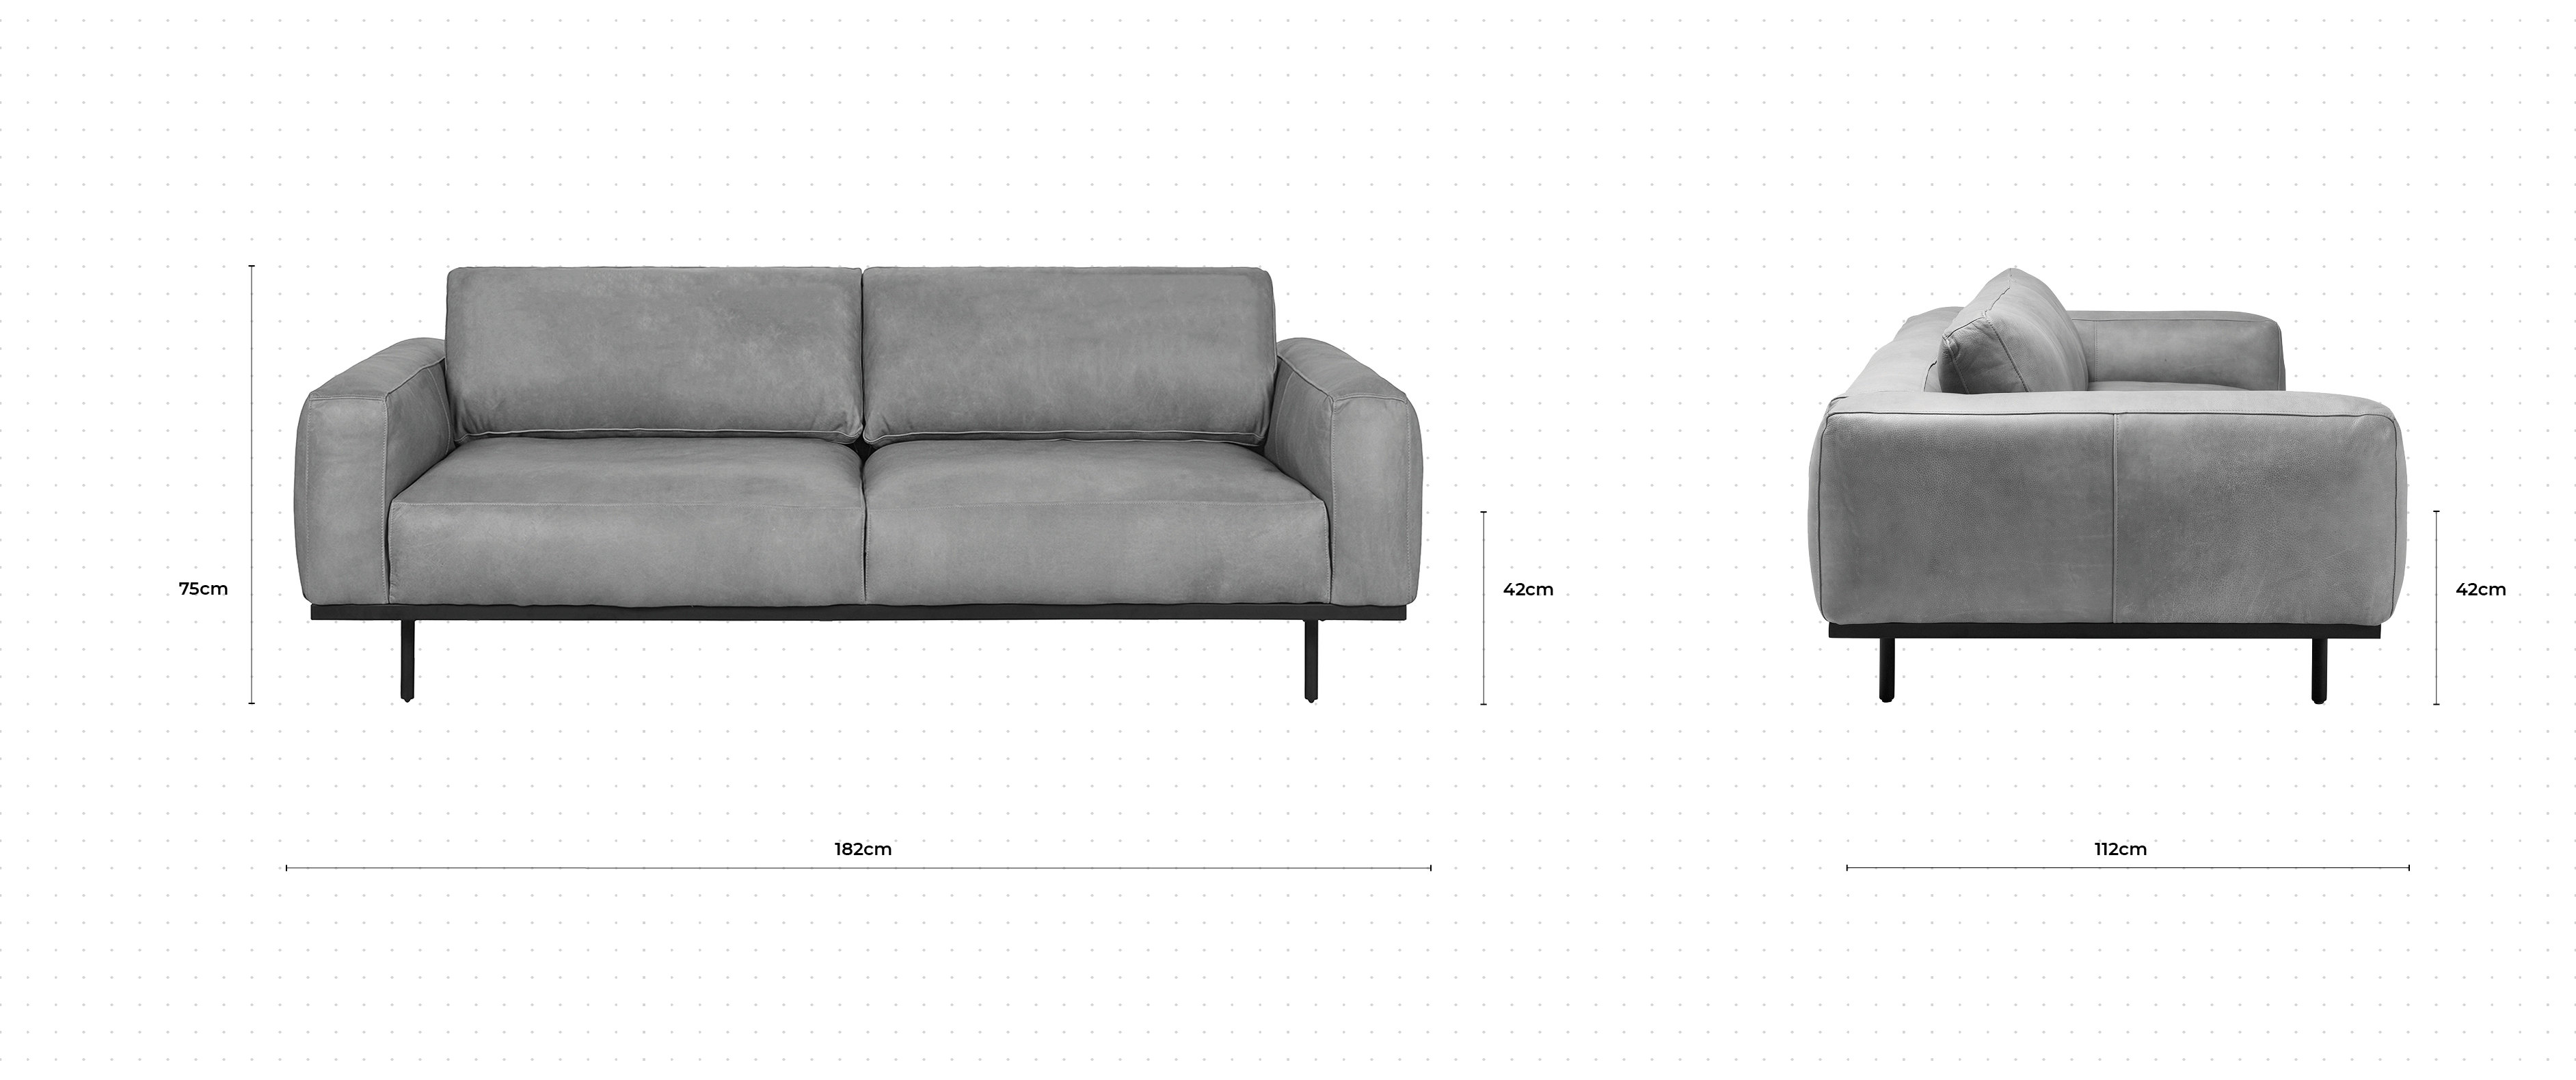 Nougat 2 Seater Sofa dimensions